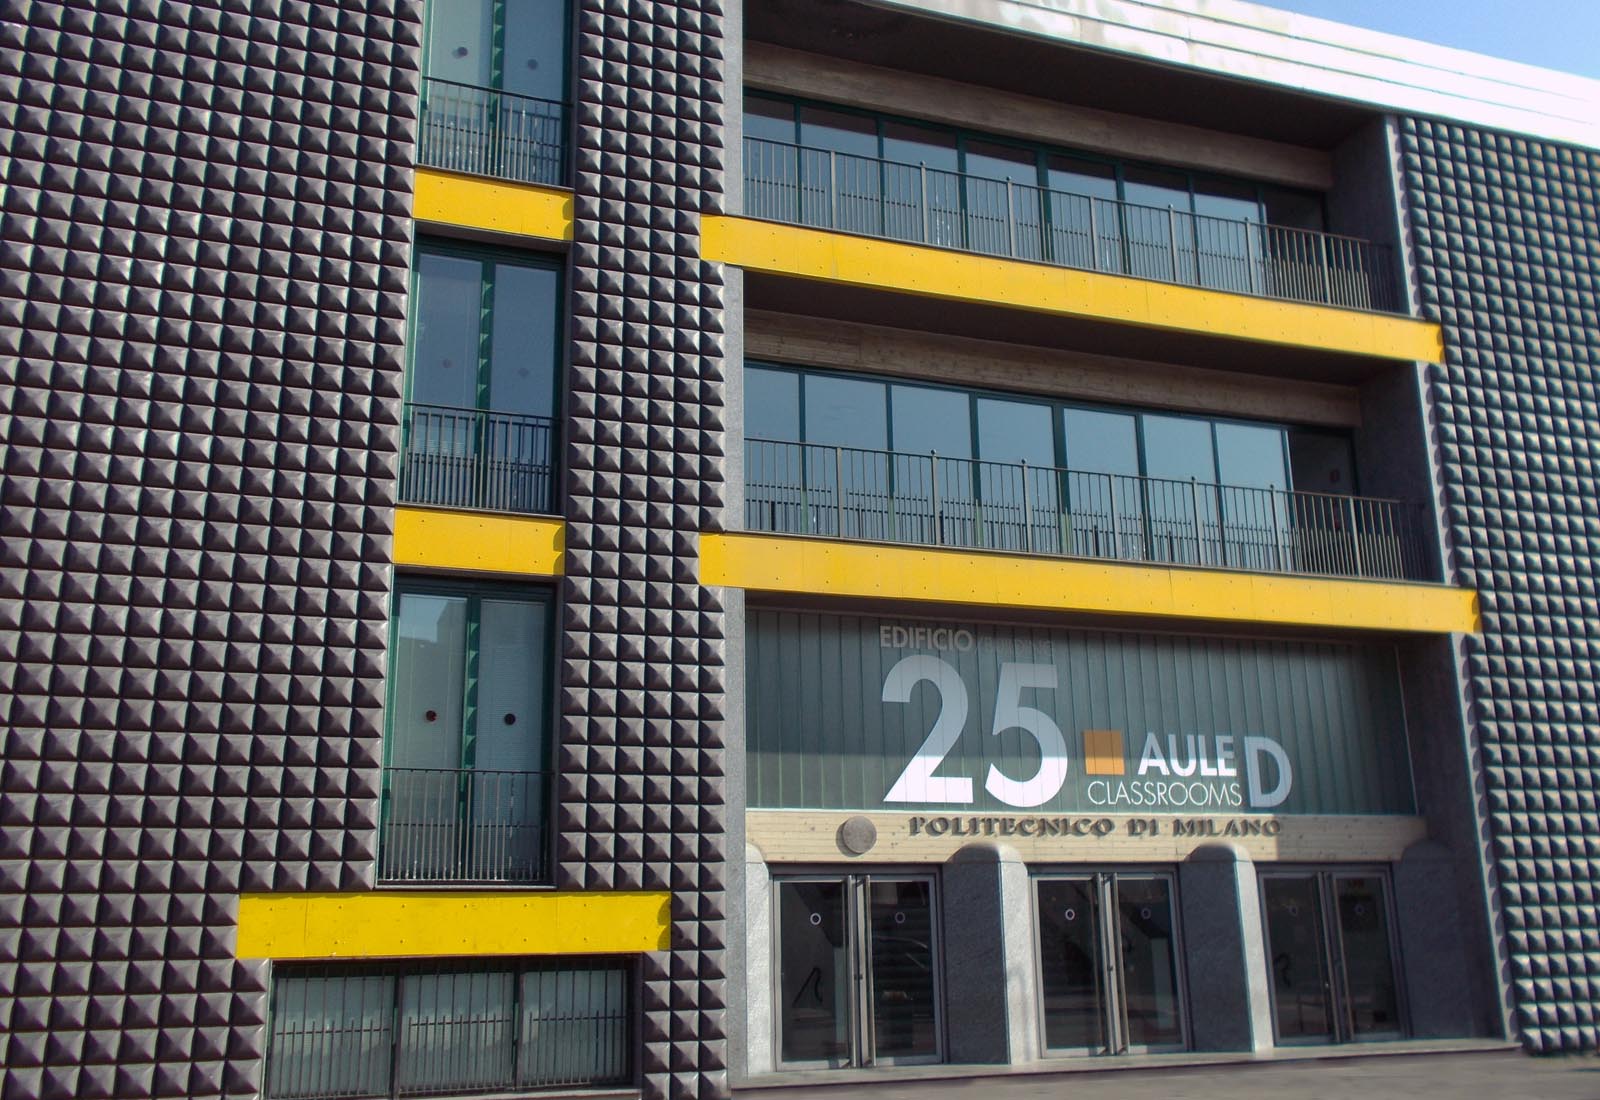 Building 25 Politecnico di Milano - The south facade